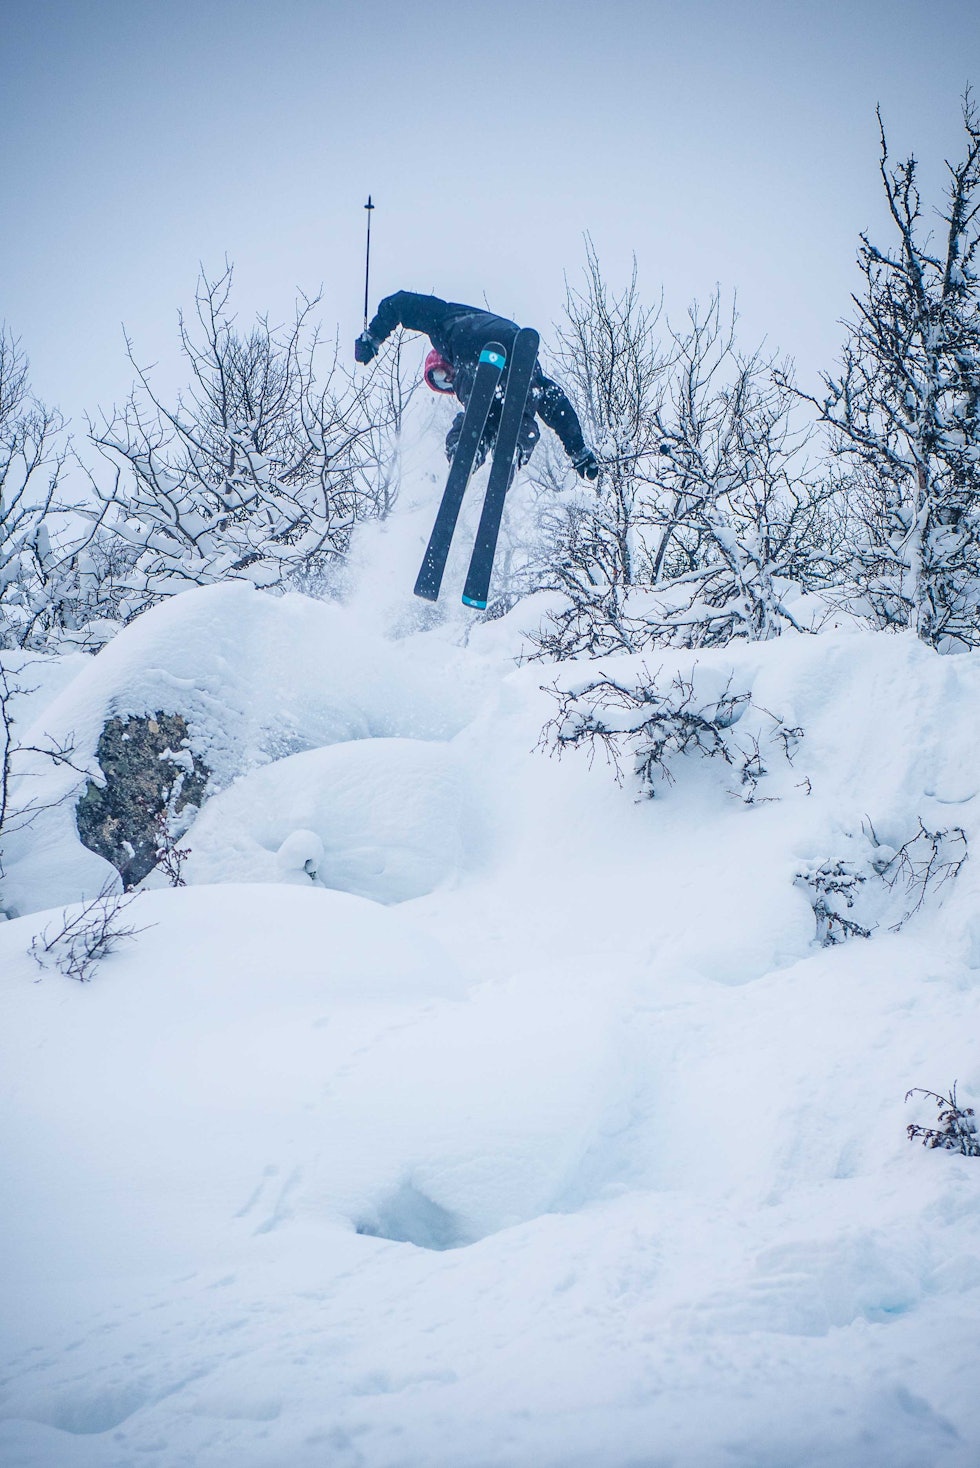 SKOTTE SPOTTER LANDINGA: Magnus Skotte Nørsteng leiker seg ut en av de mange småklippene som kom fram da skogen ble tynnet. Foto: Vegard Breie